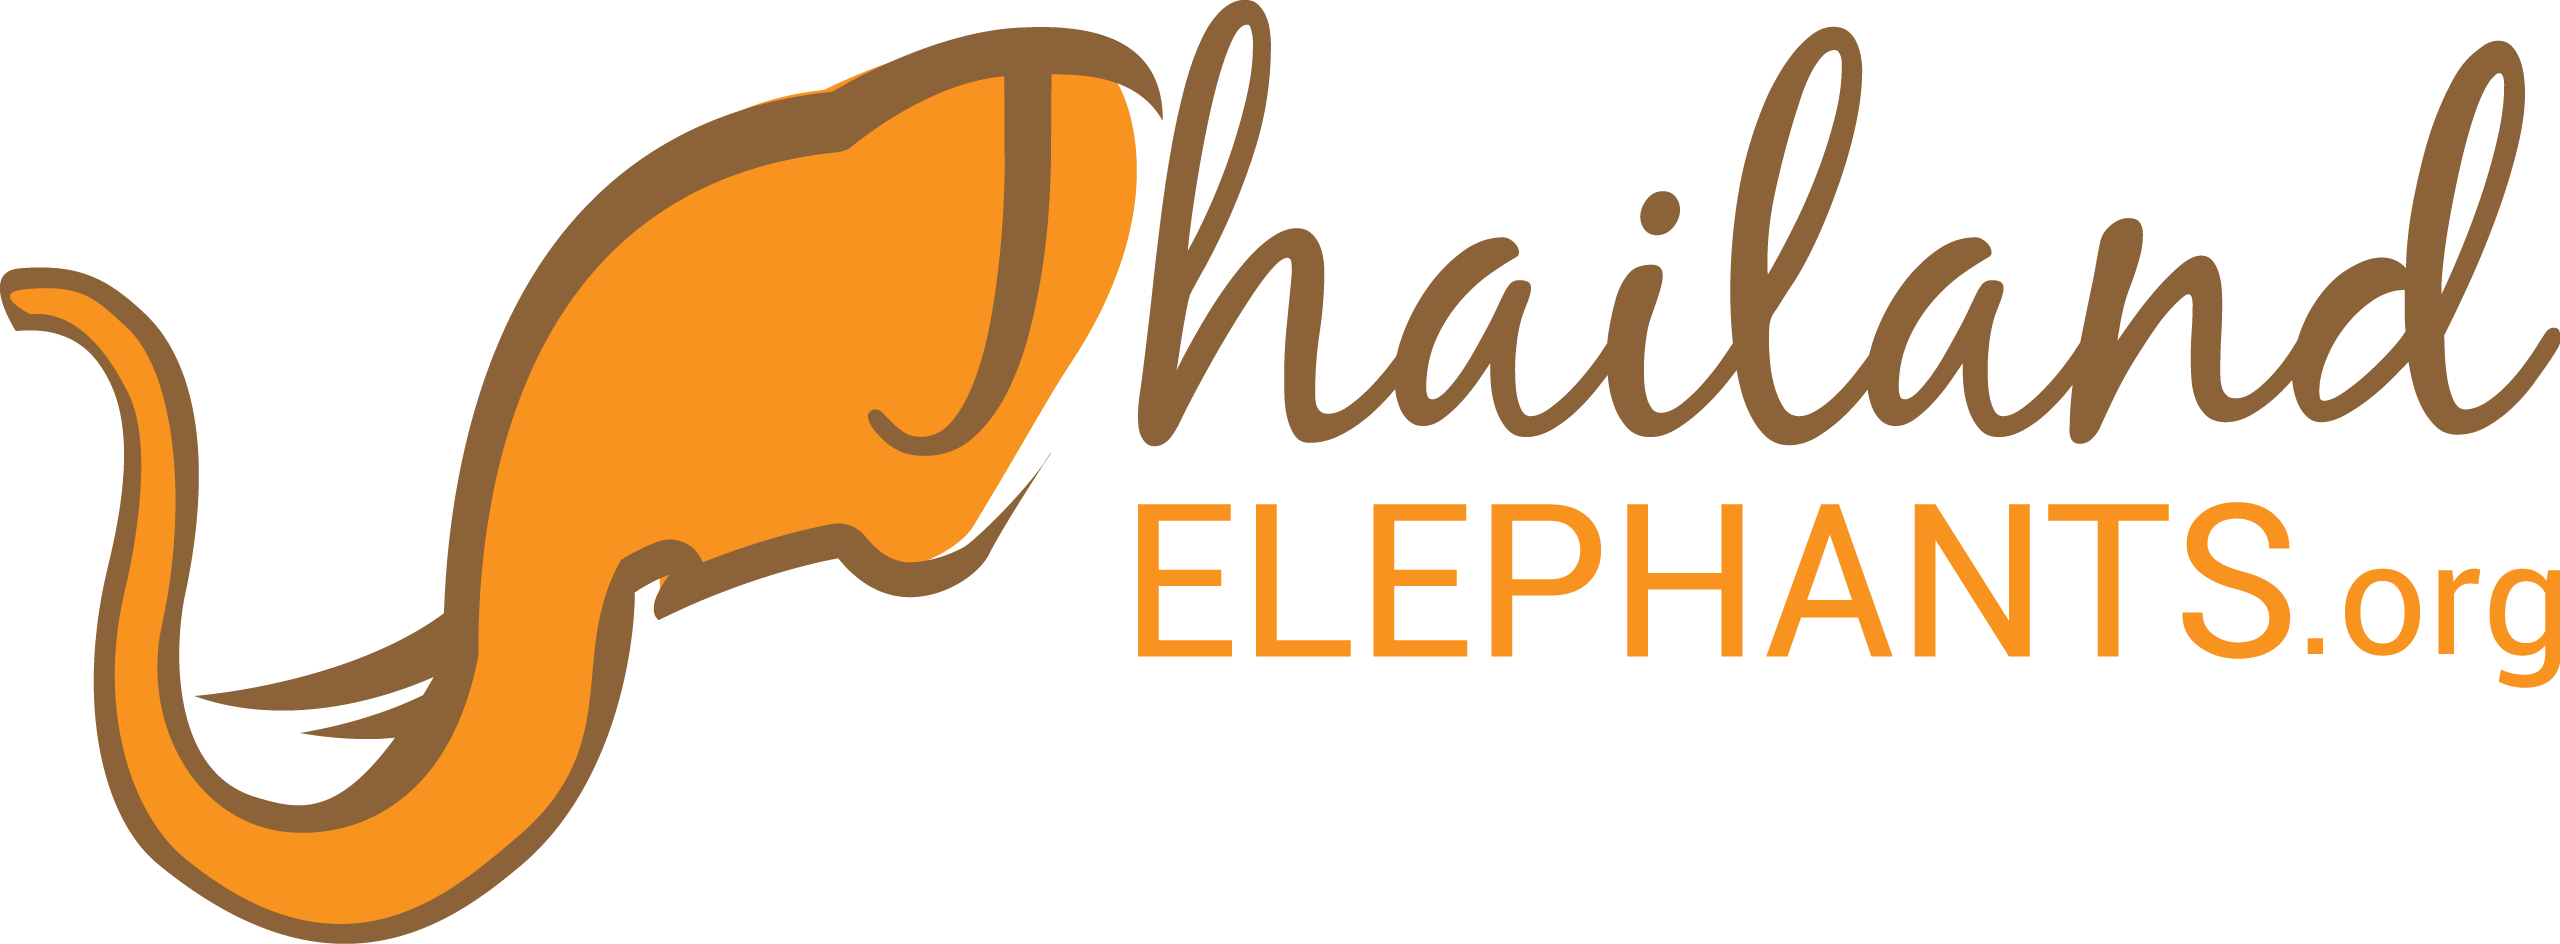 Two Elephant Logo - World Elephant Day